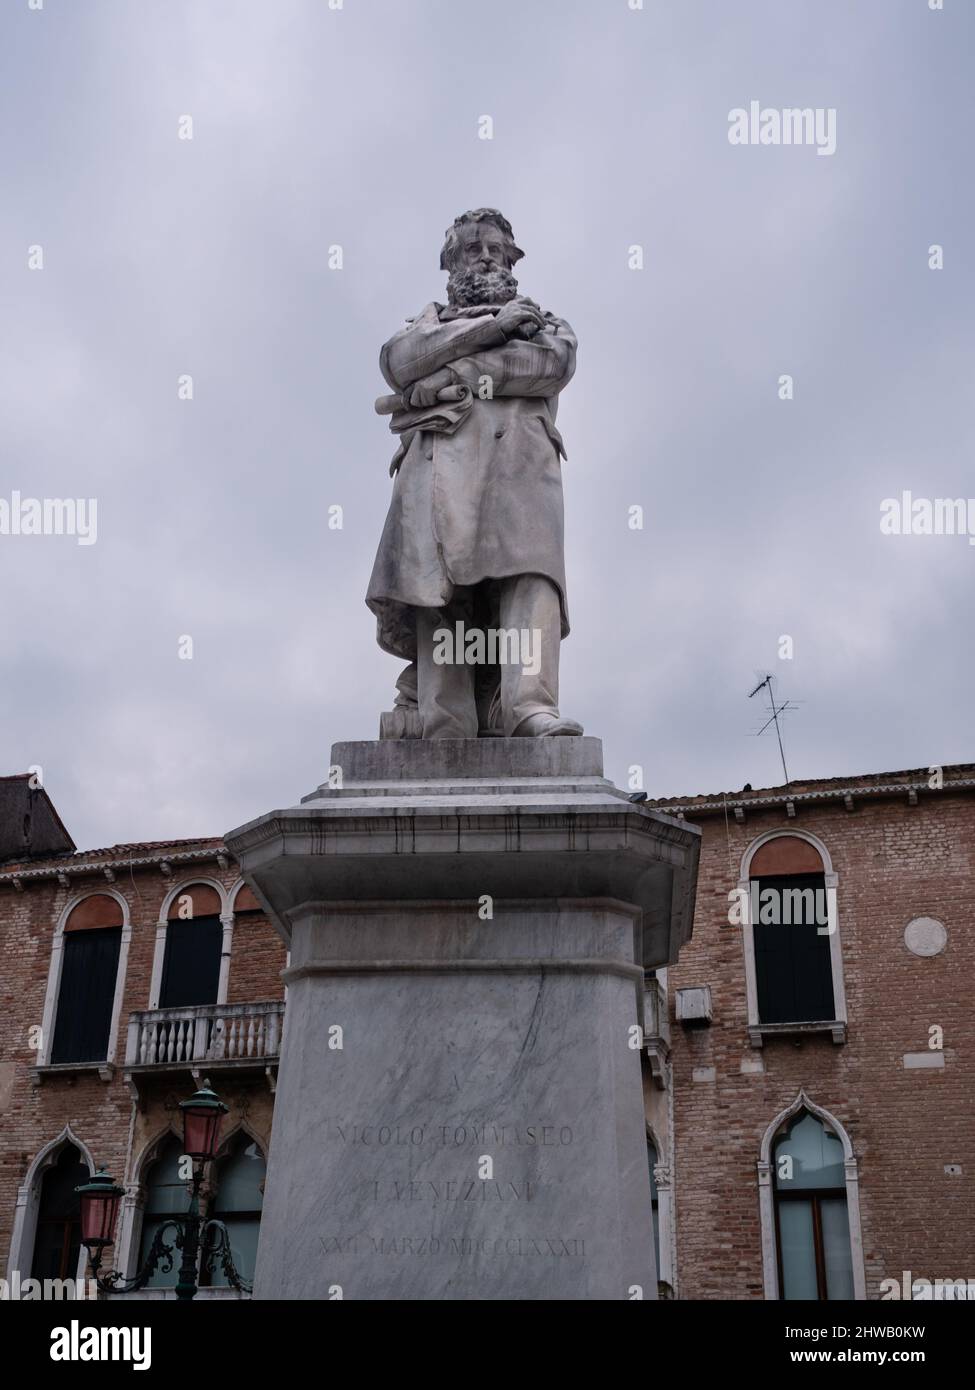 Statua di Nicolo Tommaseo su campo San Stefano a Venezia, realizzata da Francesco Barzaghi nel 1882 con l'iscrizione 'a Nicolo Tommaseo del Veneto Foto Stock